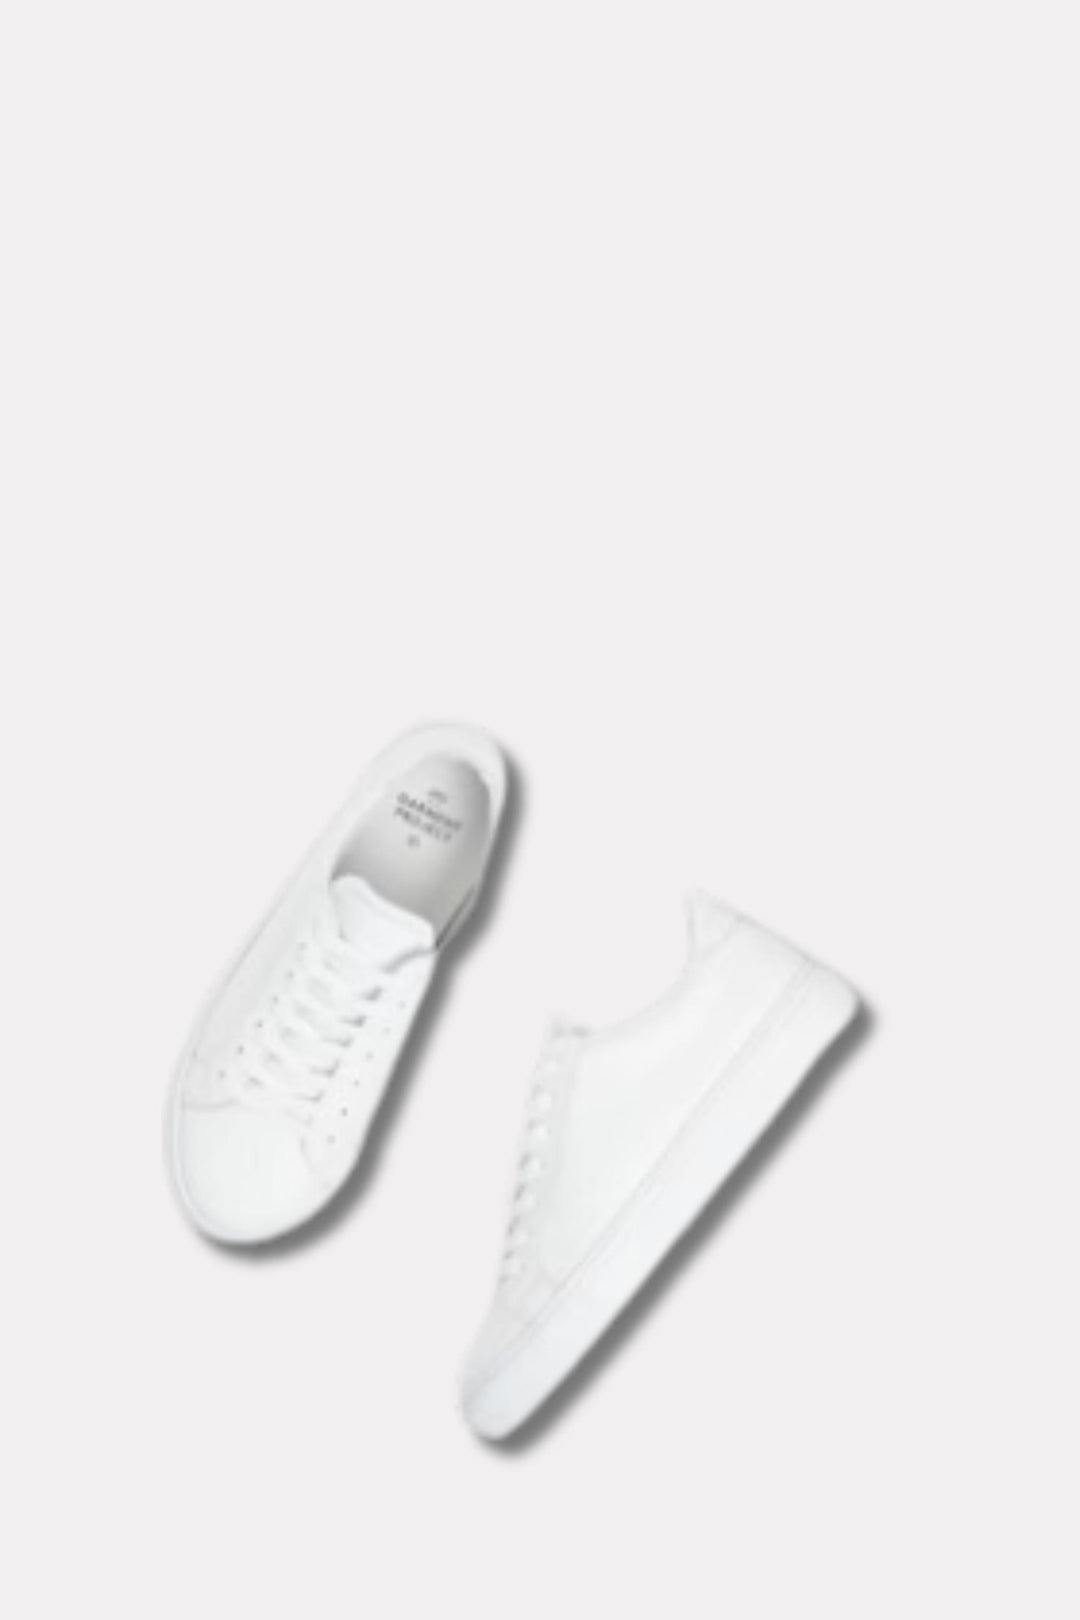 W Type White Leather